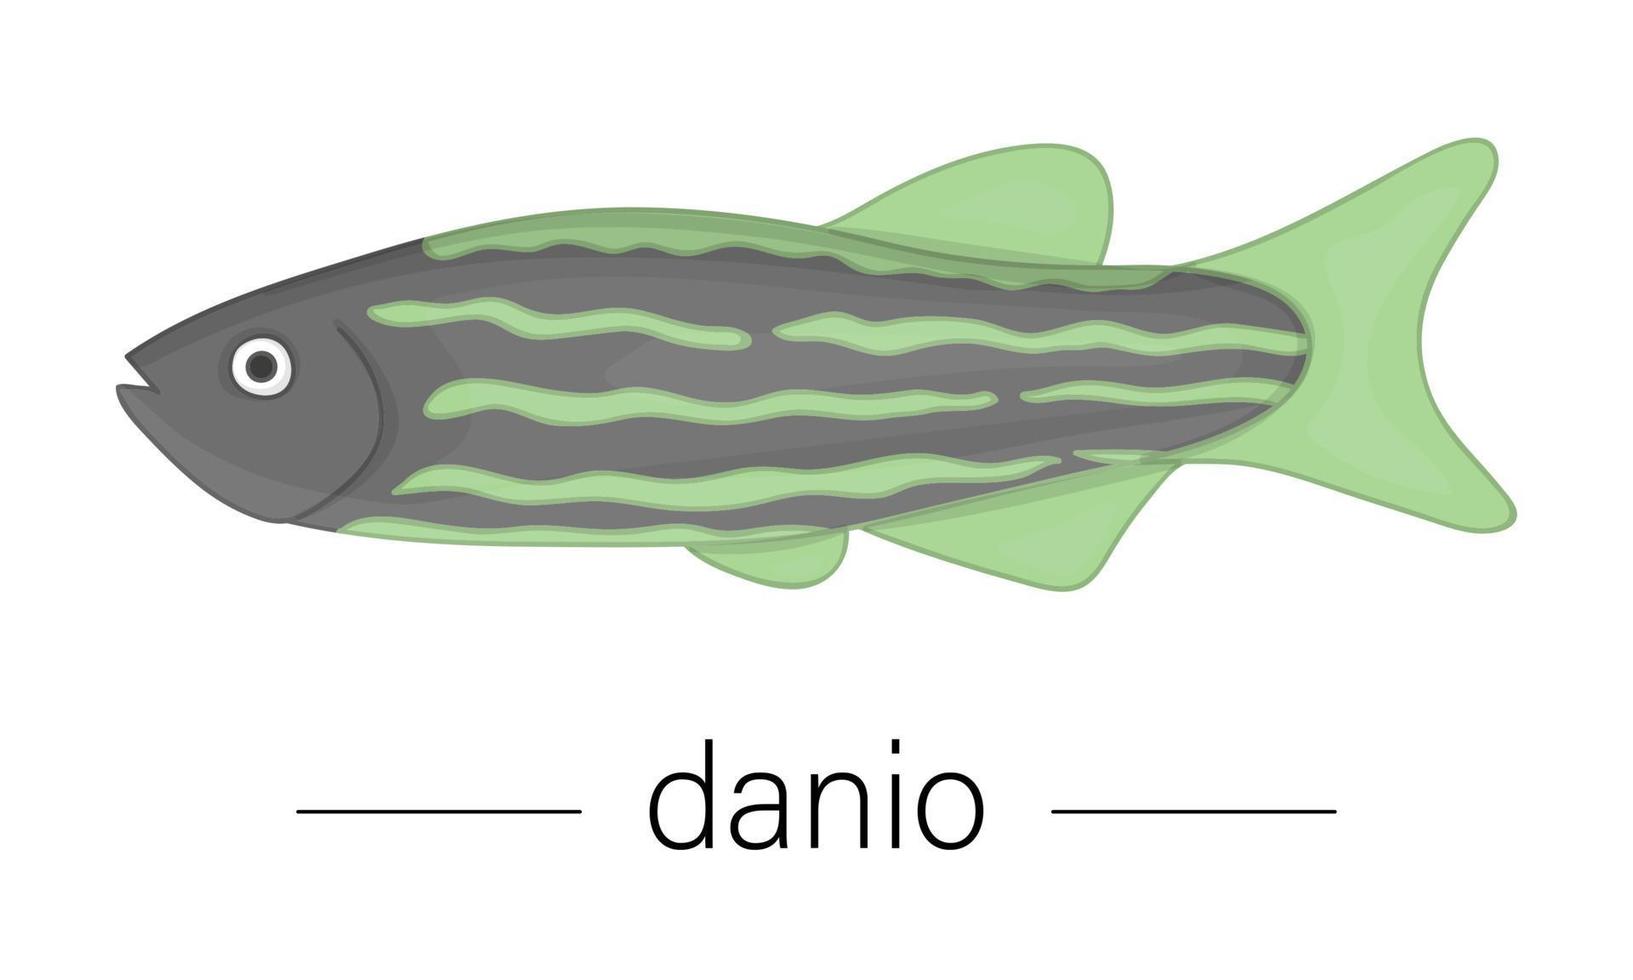 Vector colored illustration of aquarium fish. Cute picture of danio for pet shops or children illustration